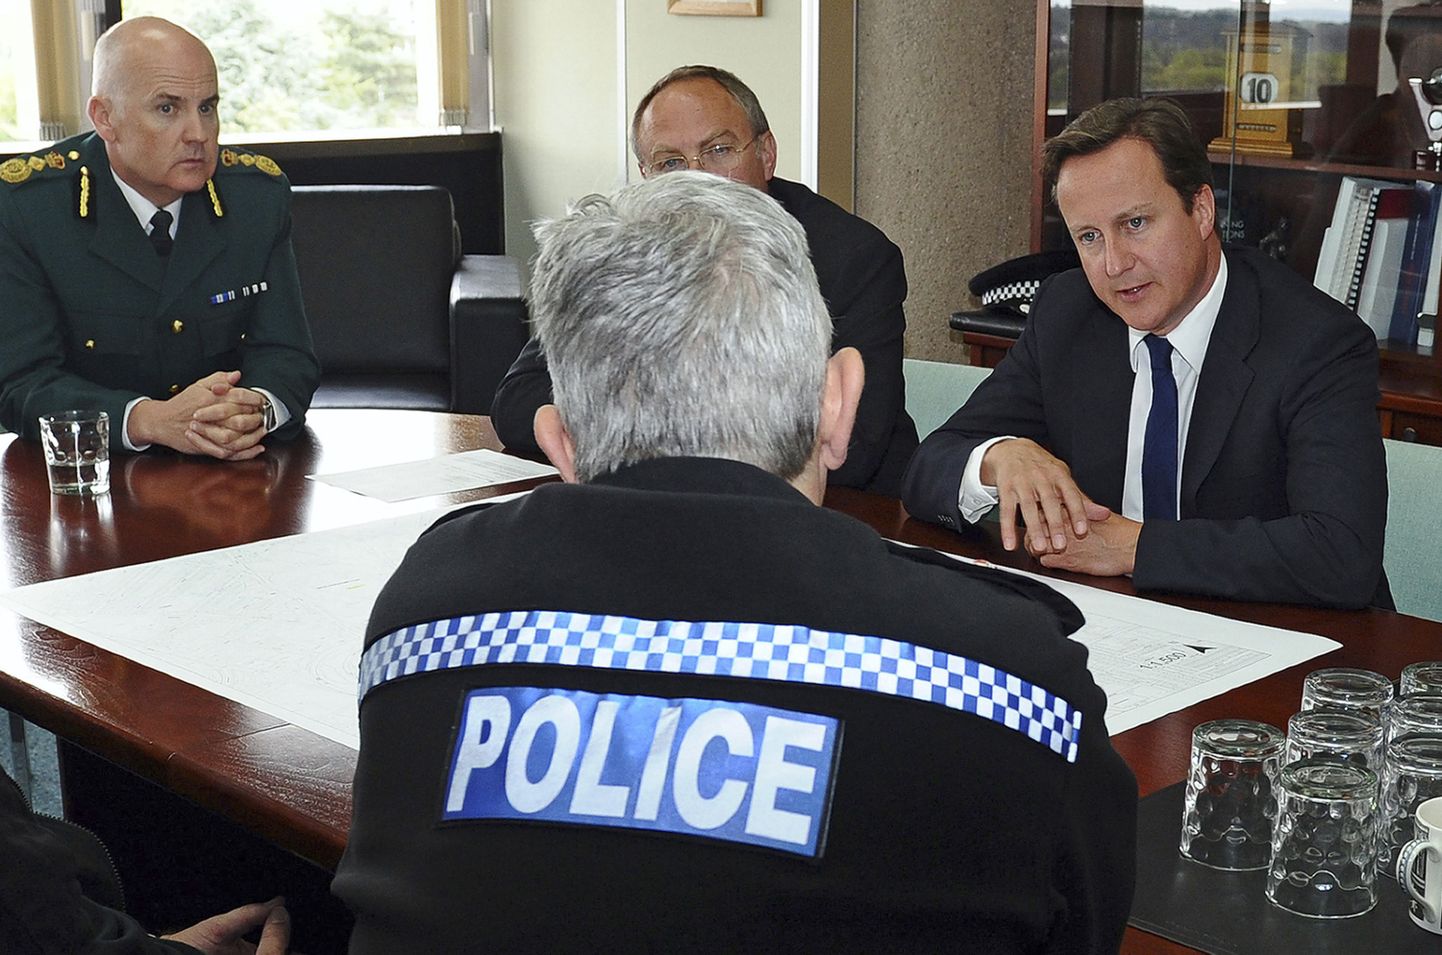 Briti peaminister David Cameron politseijuhtidega kohtumas